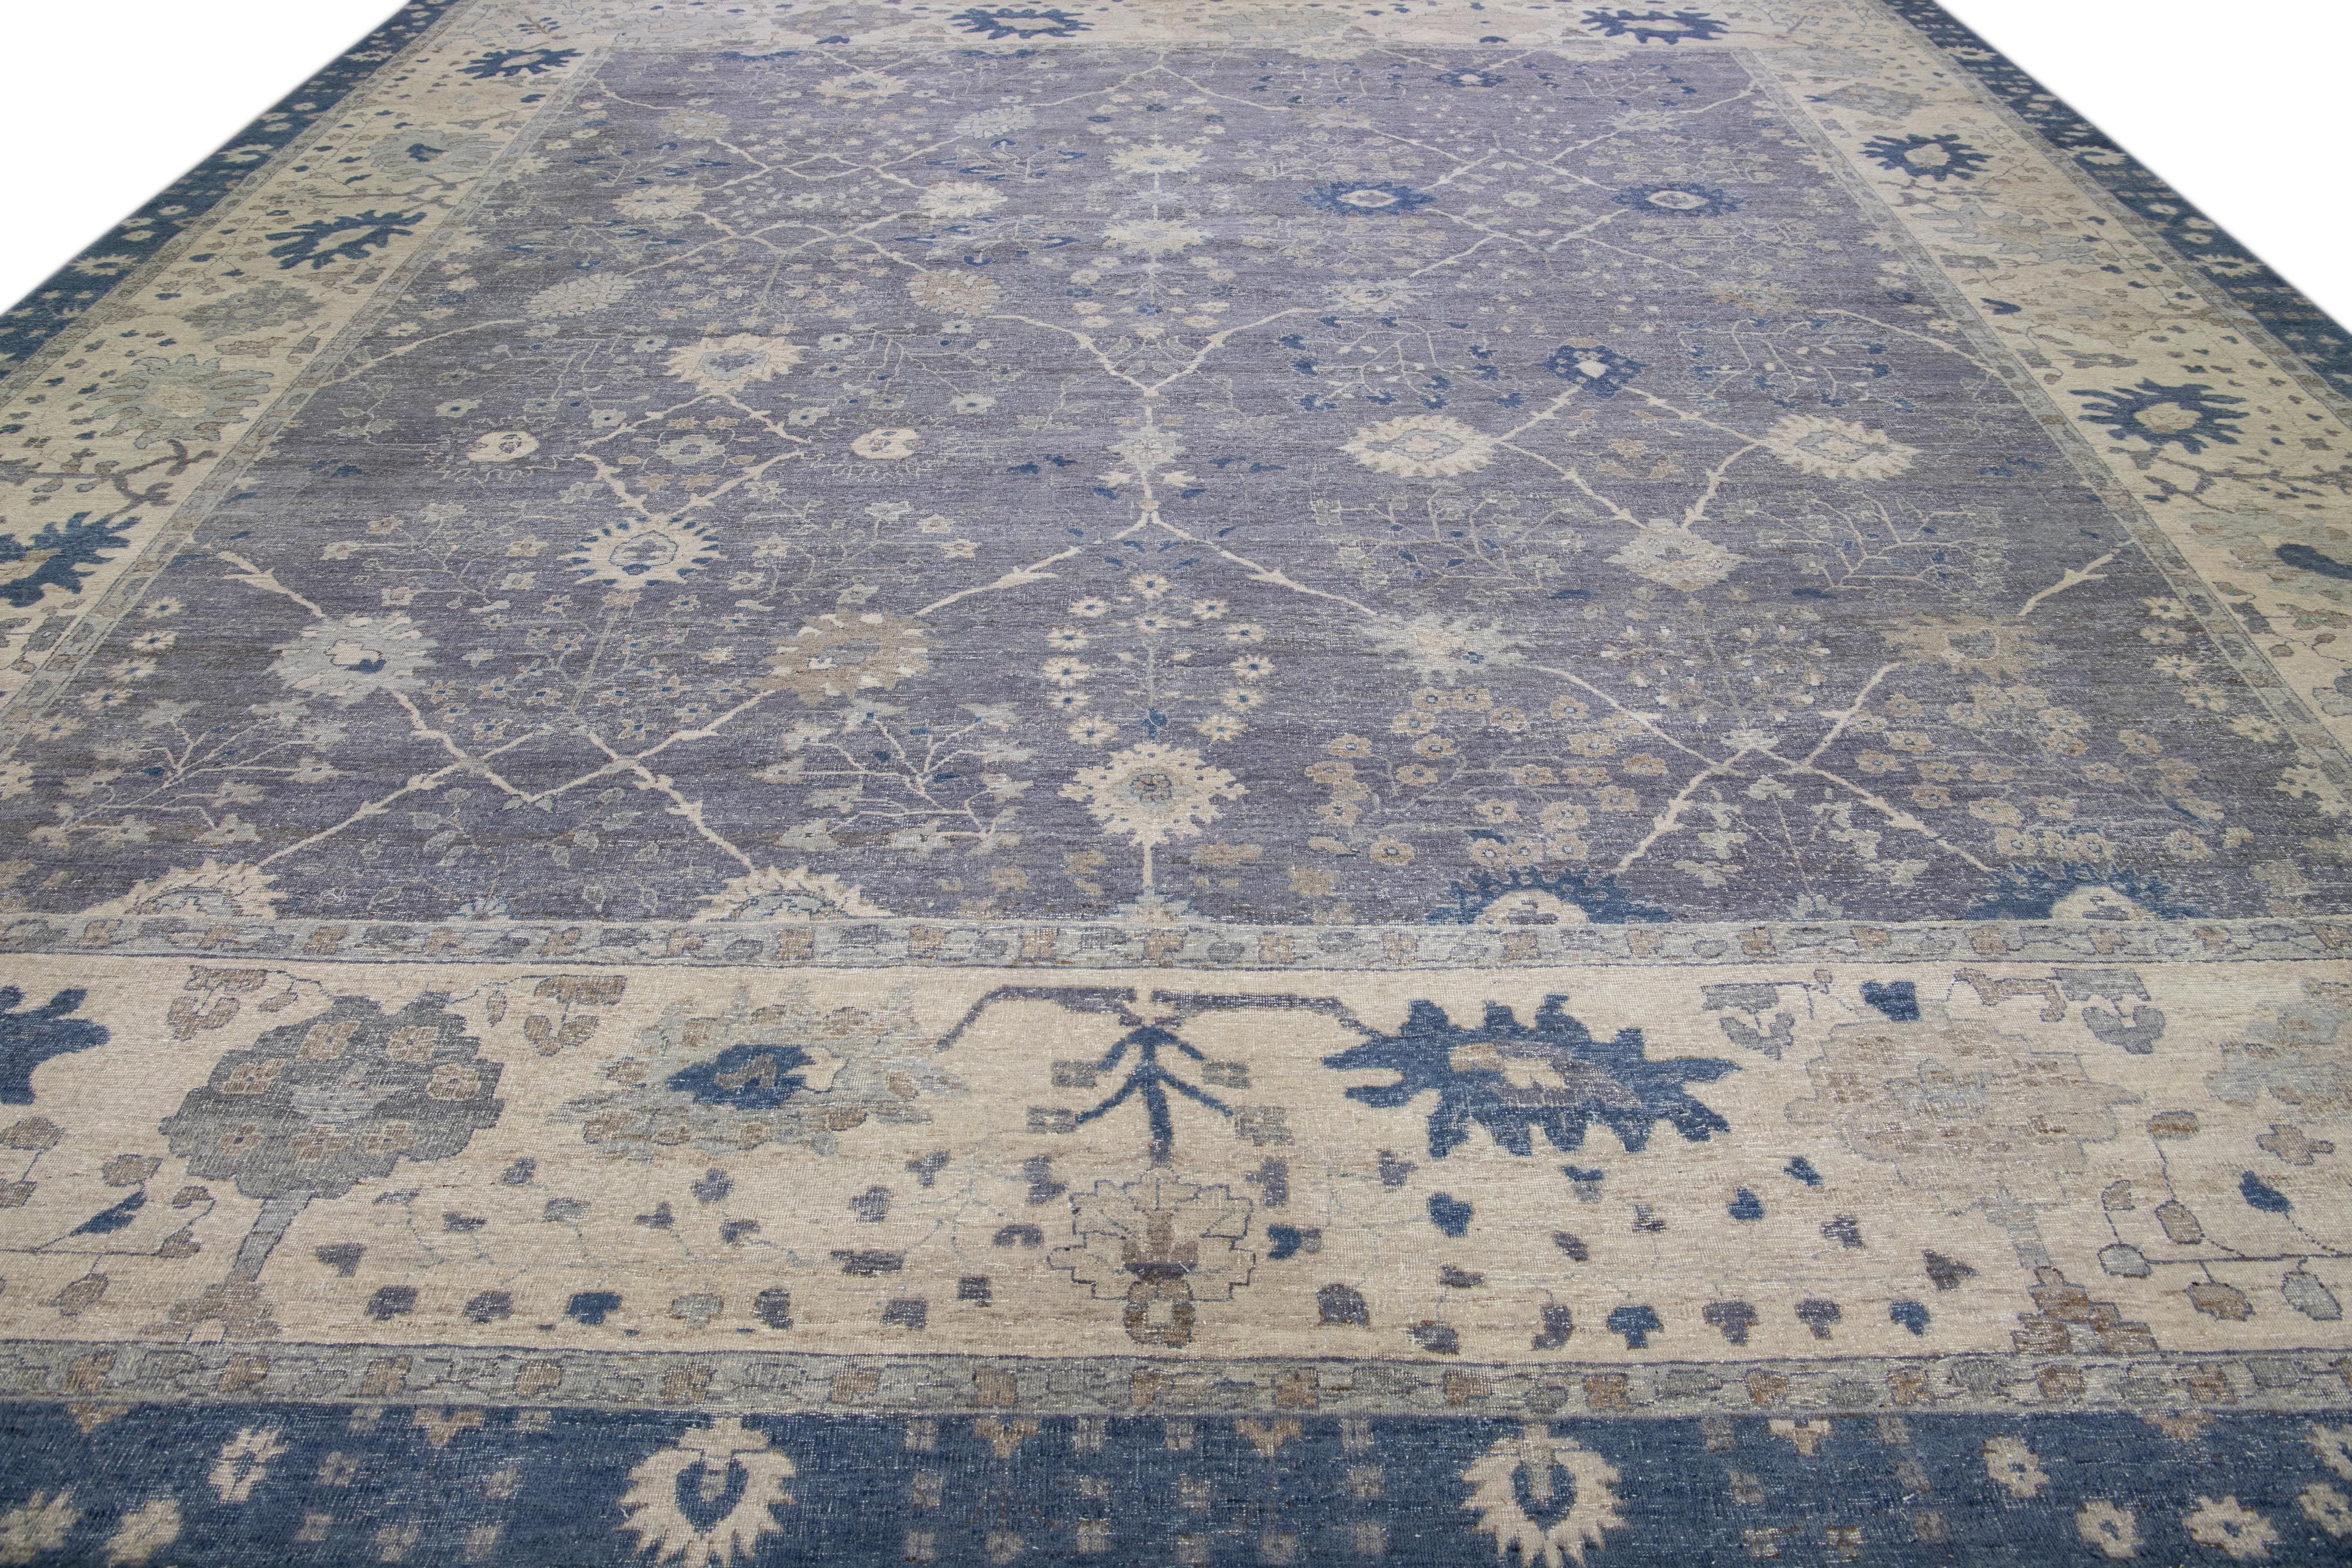 Die Artisan Line von Apadana ist eine Neuinterpretation antiker Teppiche, die auf elegante Weise eine auffällige antike Ästhetik in einen Raum bringt. Diese Teppichserie ist ausgesprochen einzigartig und zeigt, wie ein antiker Teppich aussehen kann.